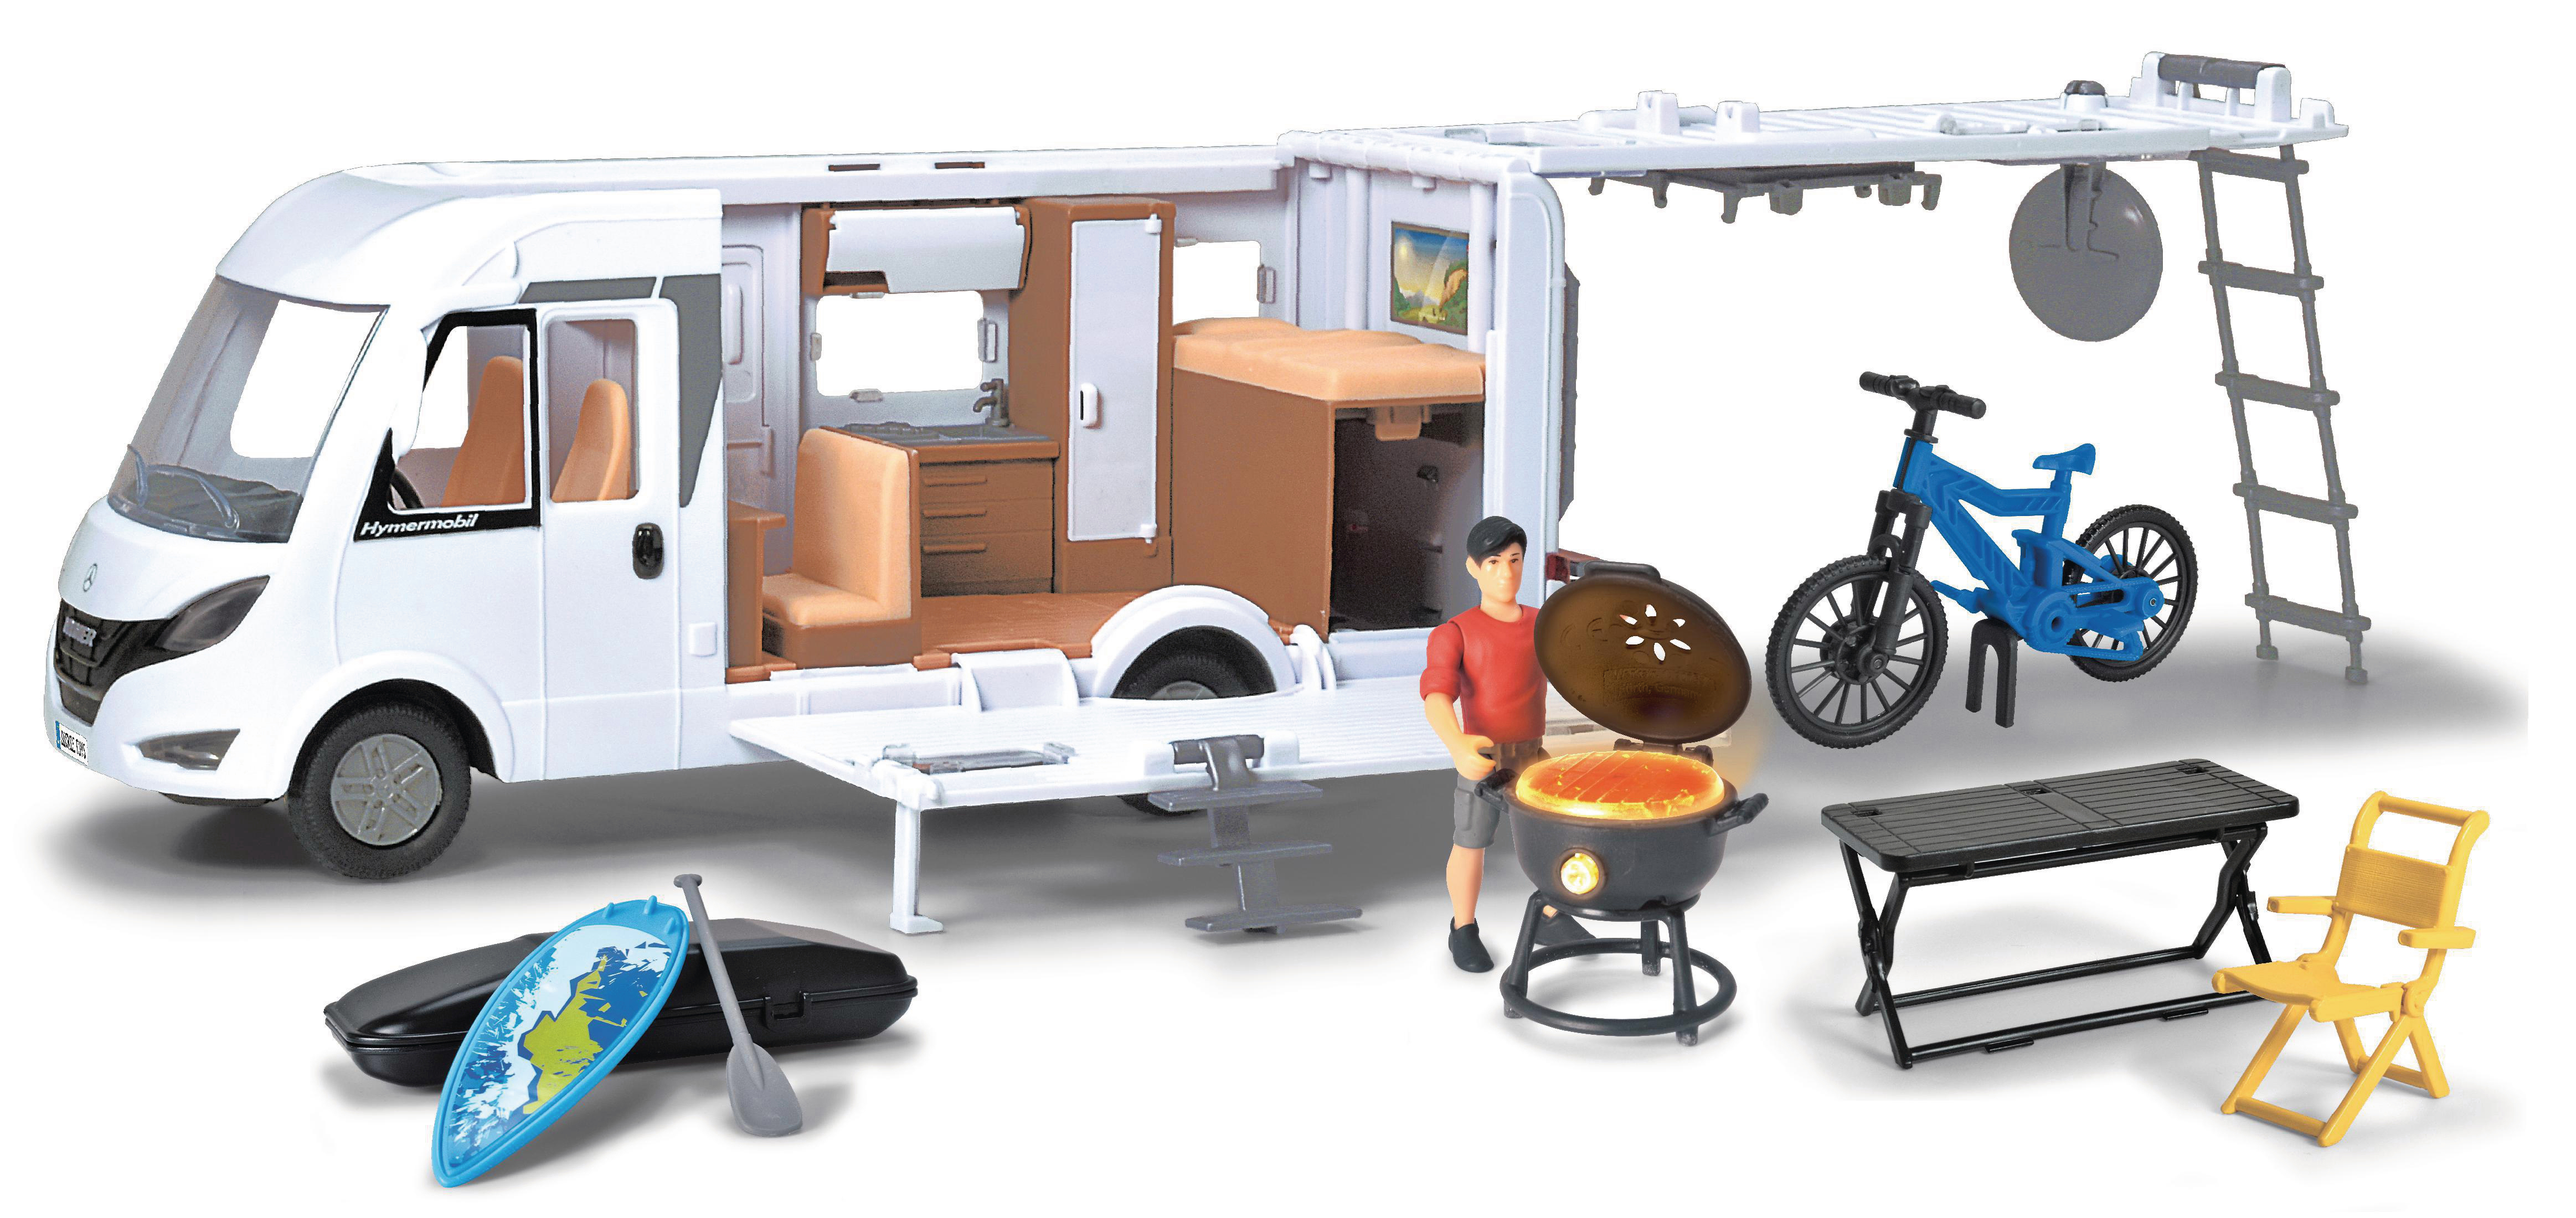 DICKIE-TOYS Camper Set, Hymer Camping mit Interieur Weiß Spielzeugauto Van